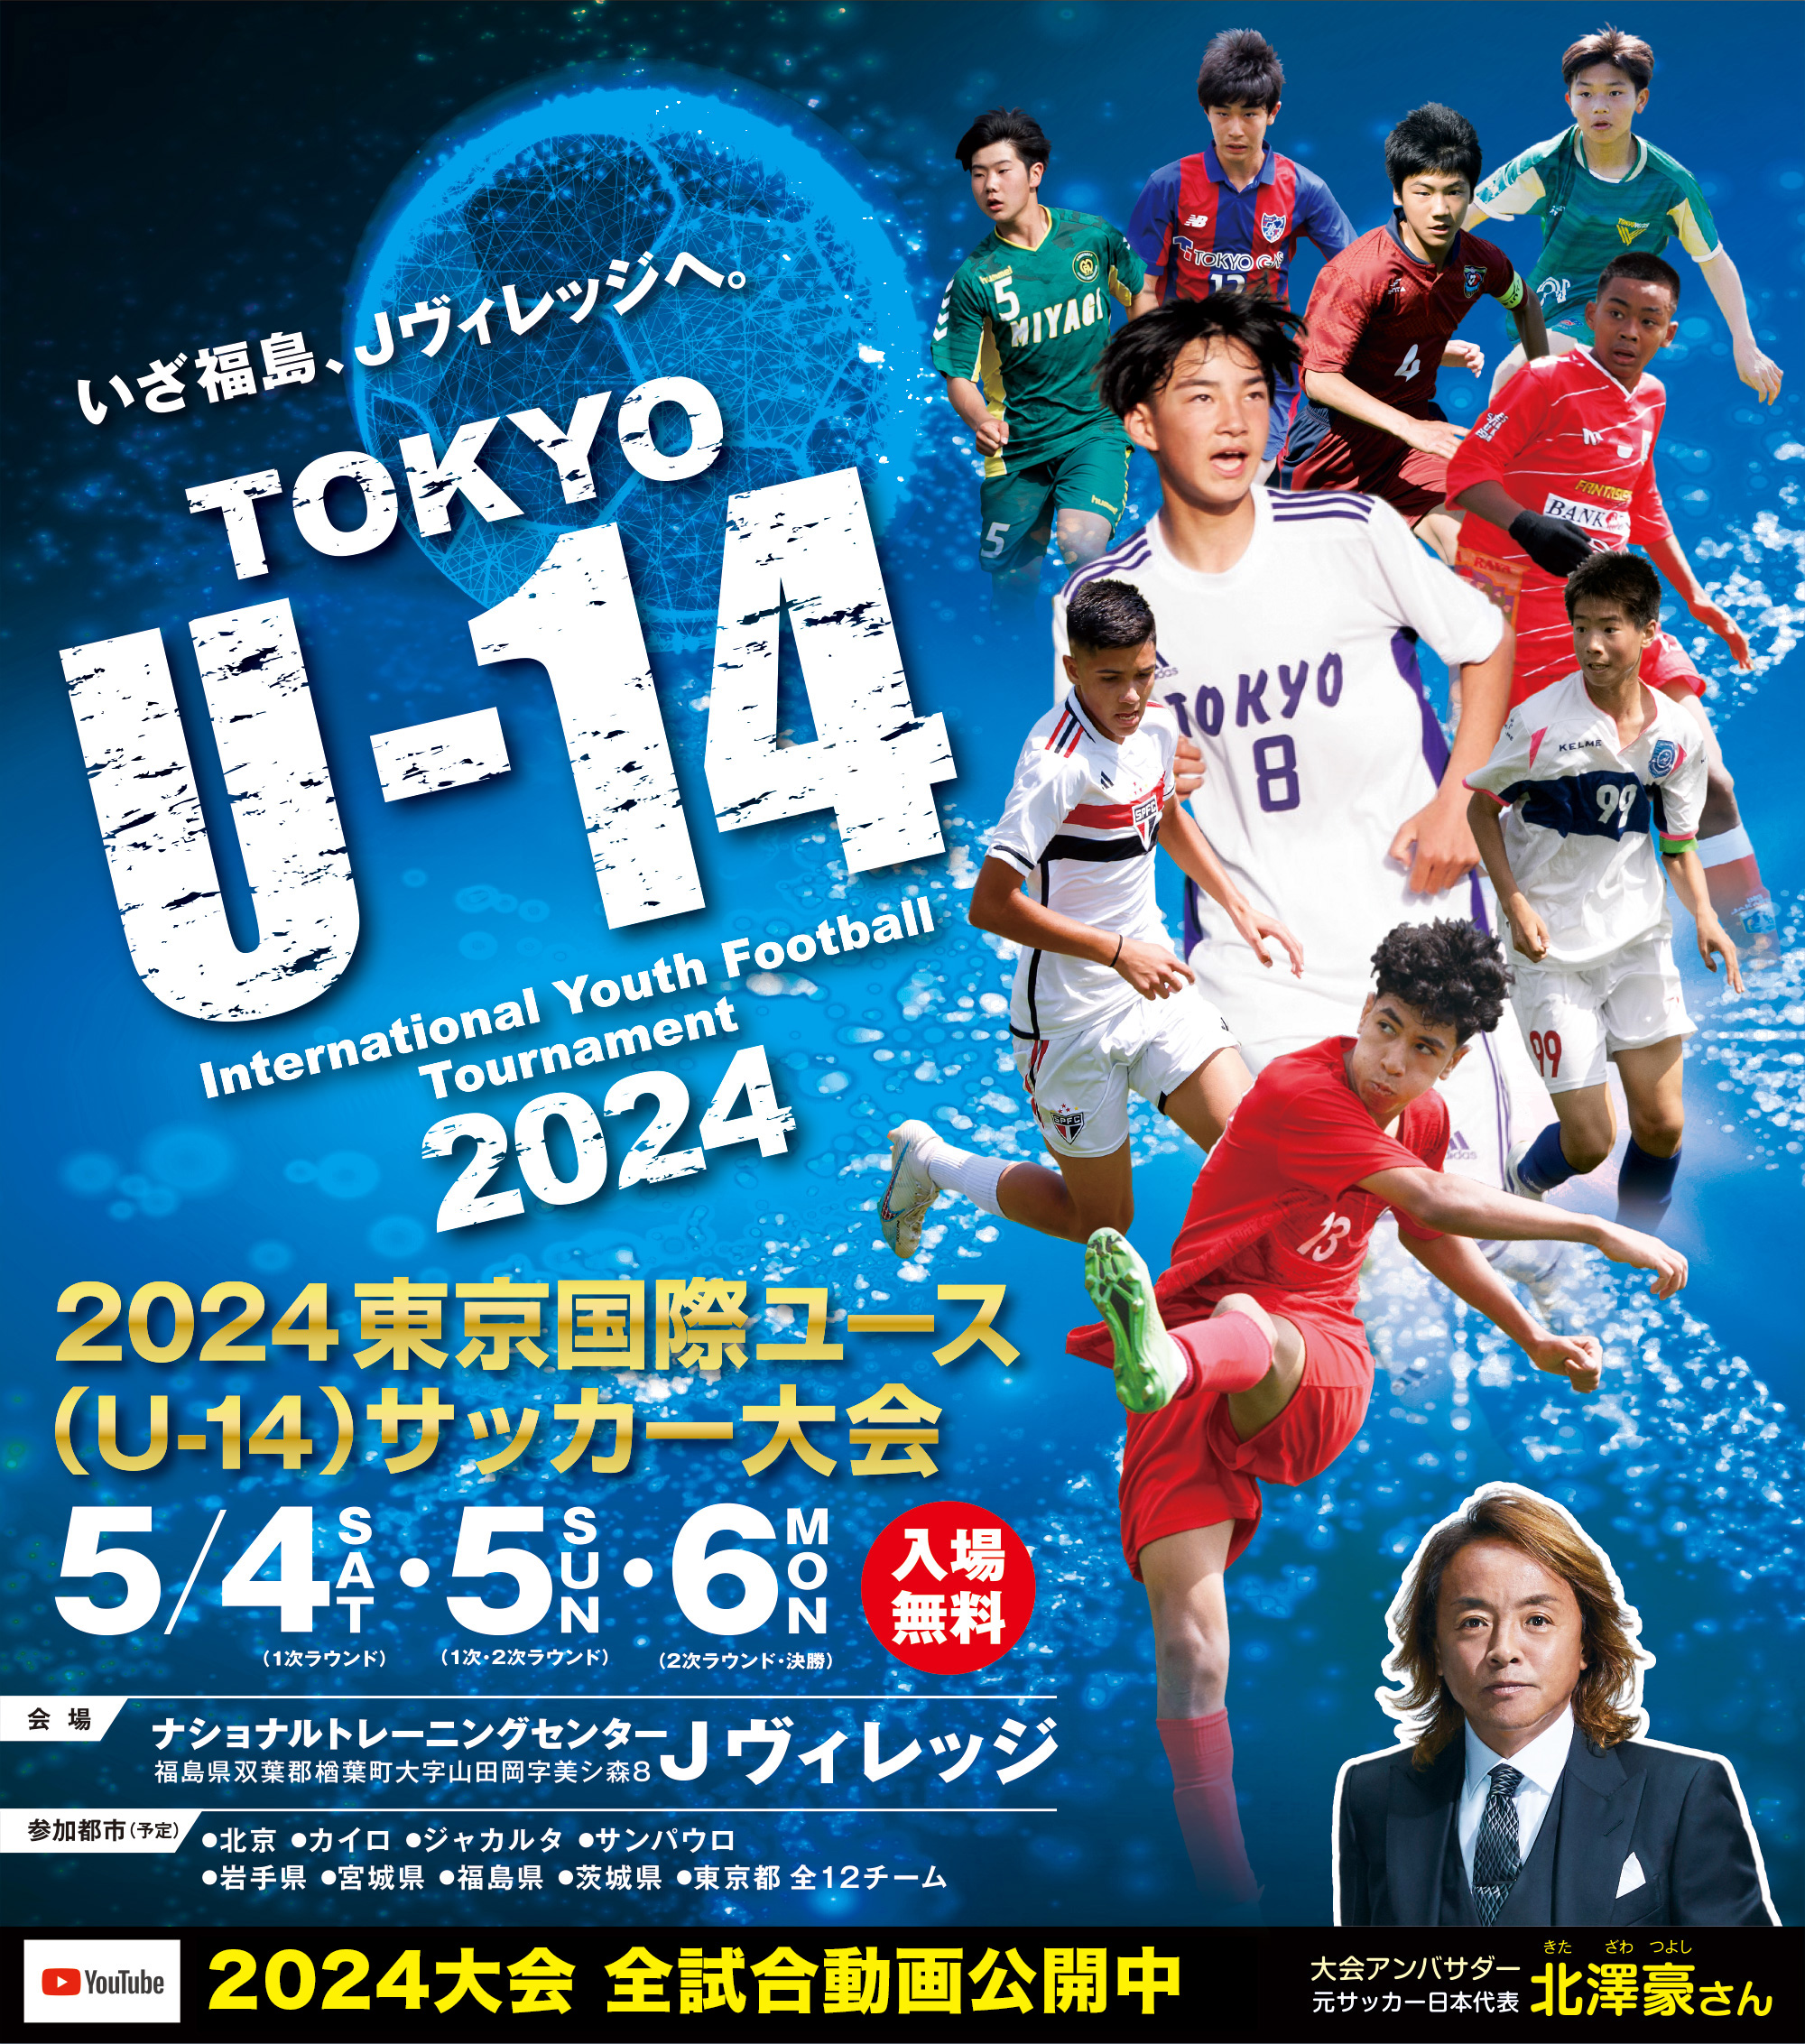 2024東京国際ユース(U-14)サッカー大会 Tokyo U-14 International Youth Football Tournament